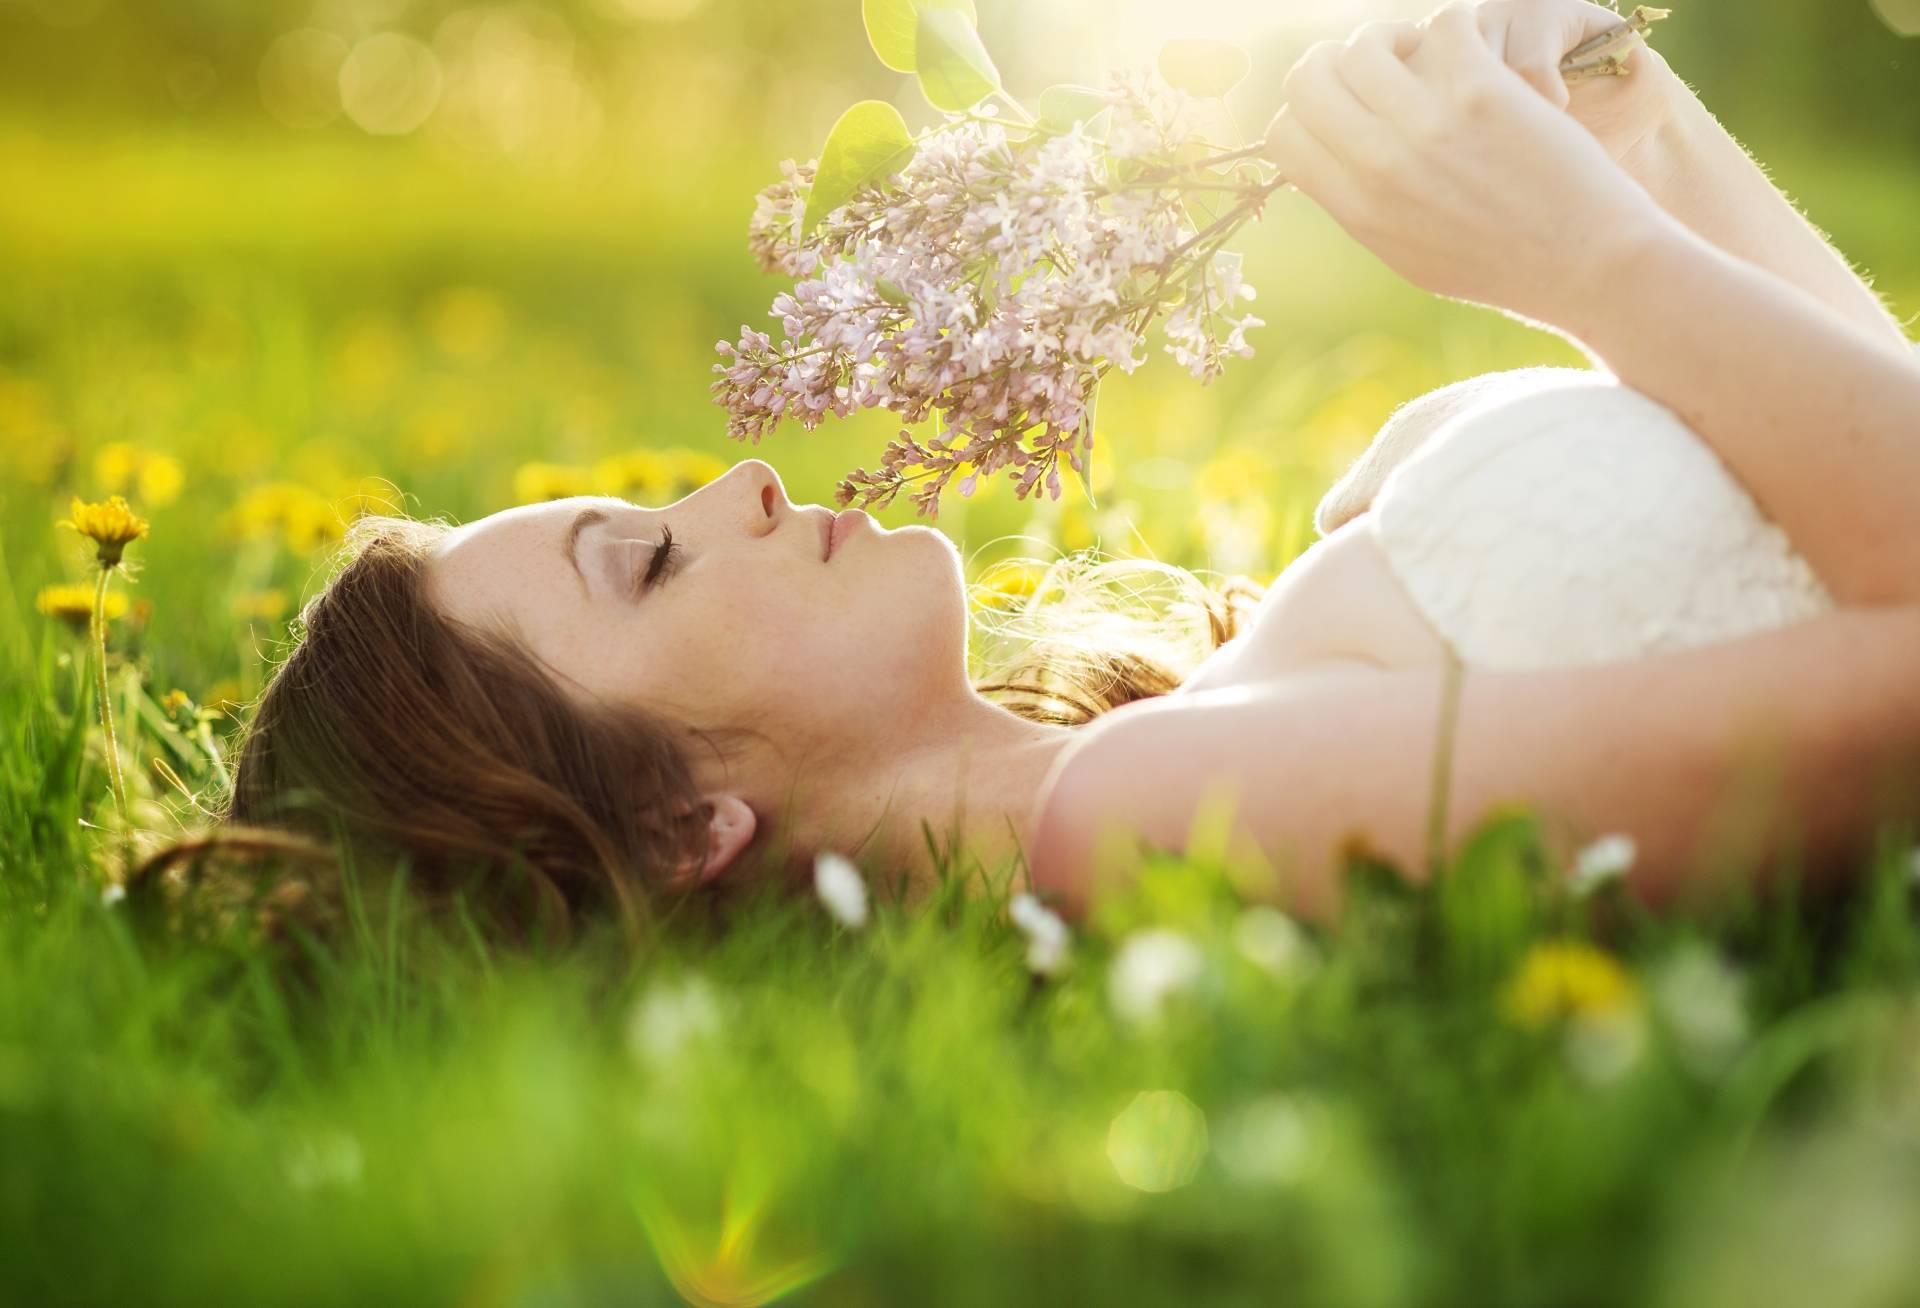 Kiedy i jak zbierać zioła? Młoda kobieta leży na trawie, trzymając w dłoni bukiet ziół.